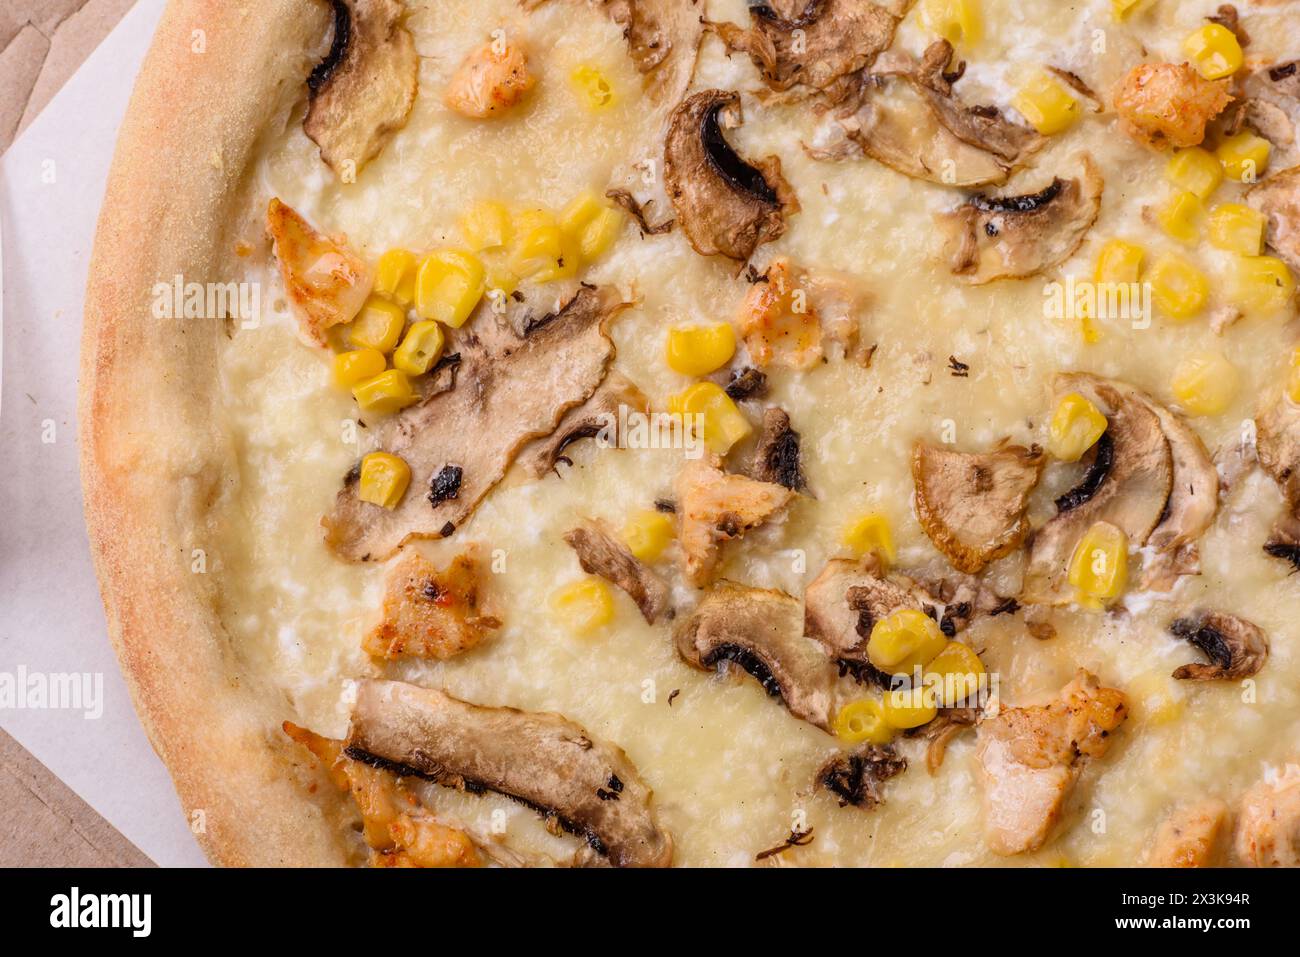 Délicieuse pizza avec du maïs, du fromage, des tomates et des champignons, du sel, des épices et des herbes sur un fond de béton foncé Banque D'Images